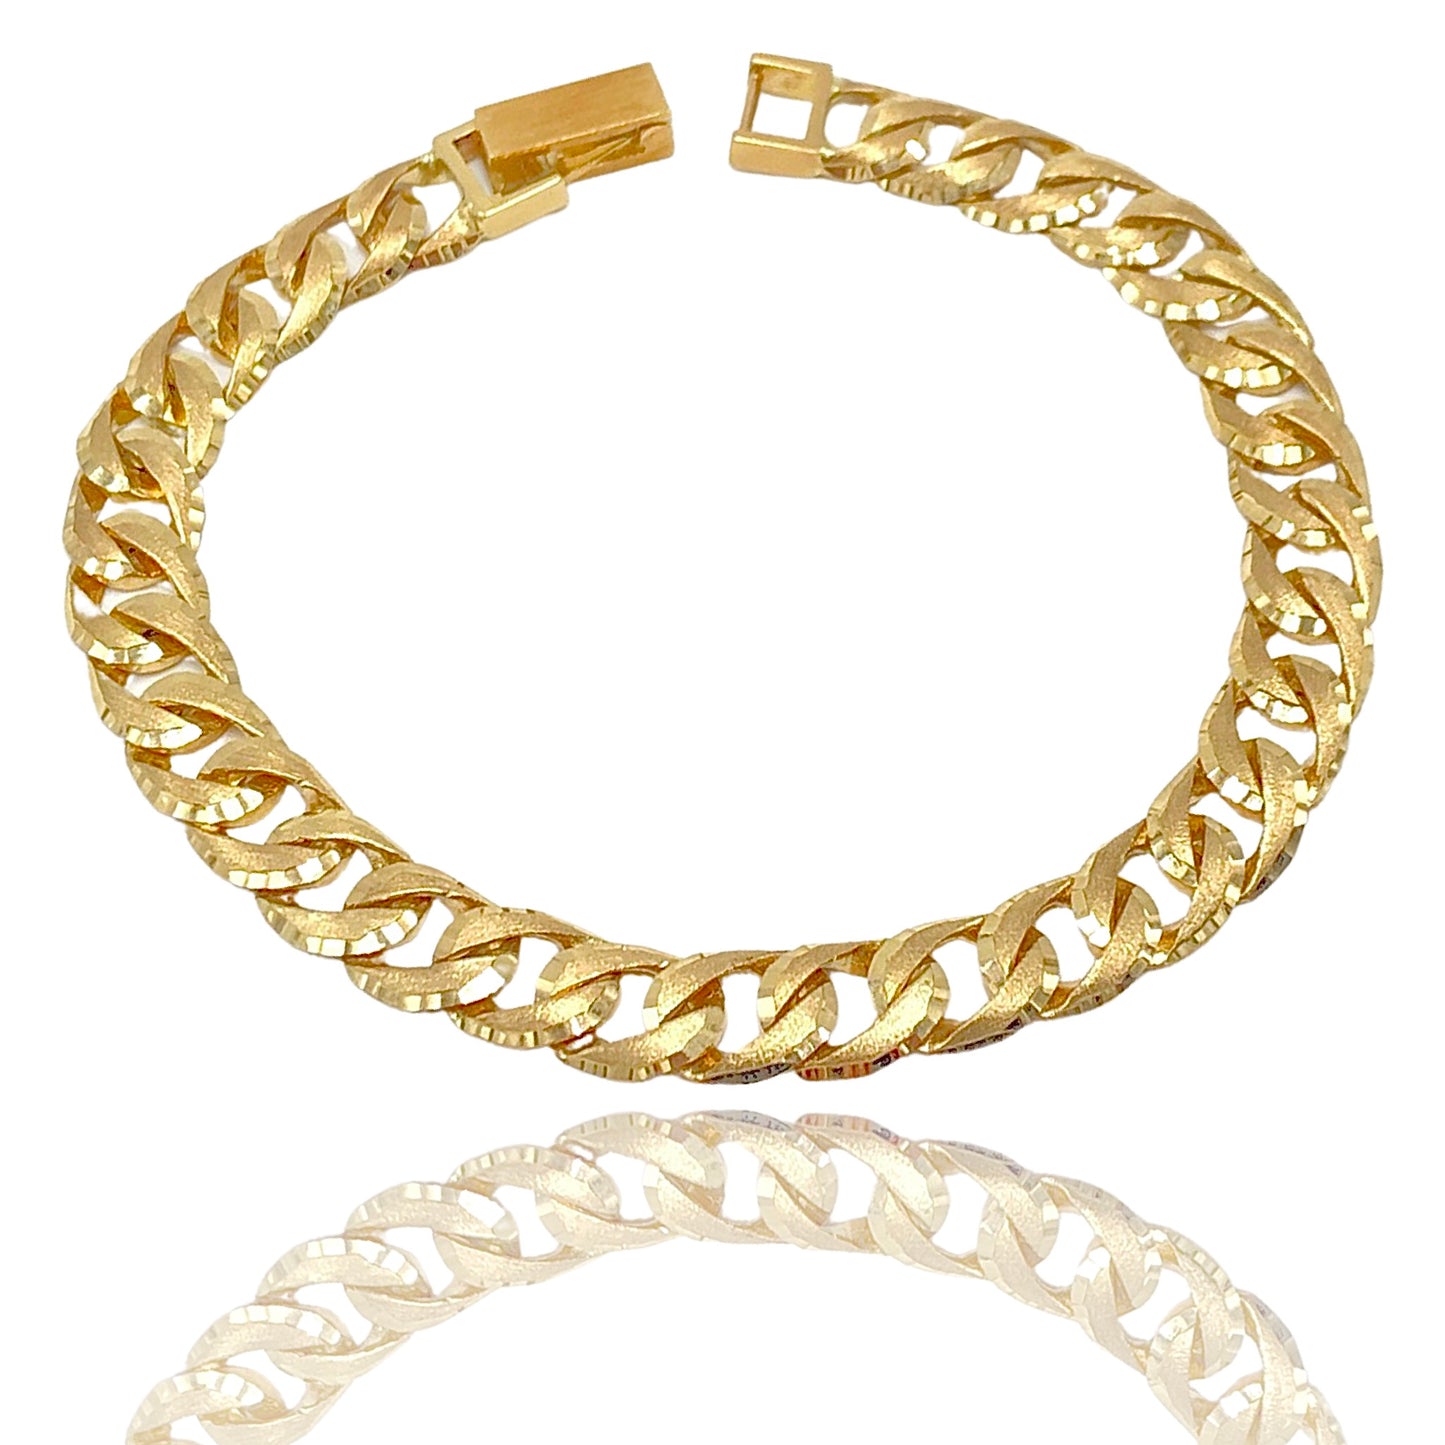 10k yellow gold dynamic Modern style bracelet 8MM